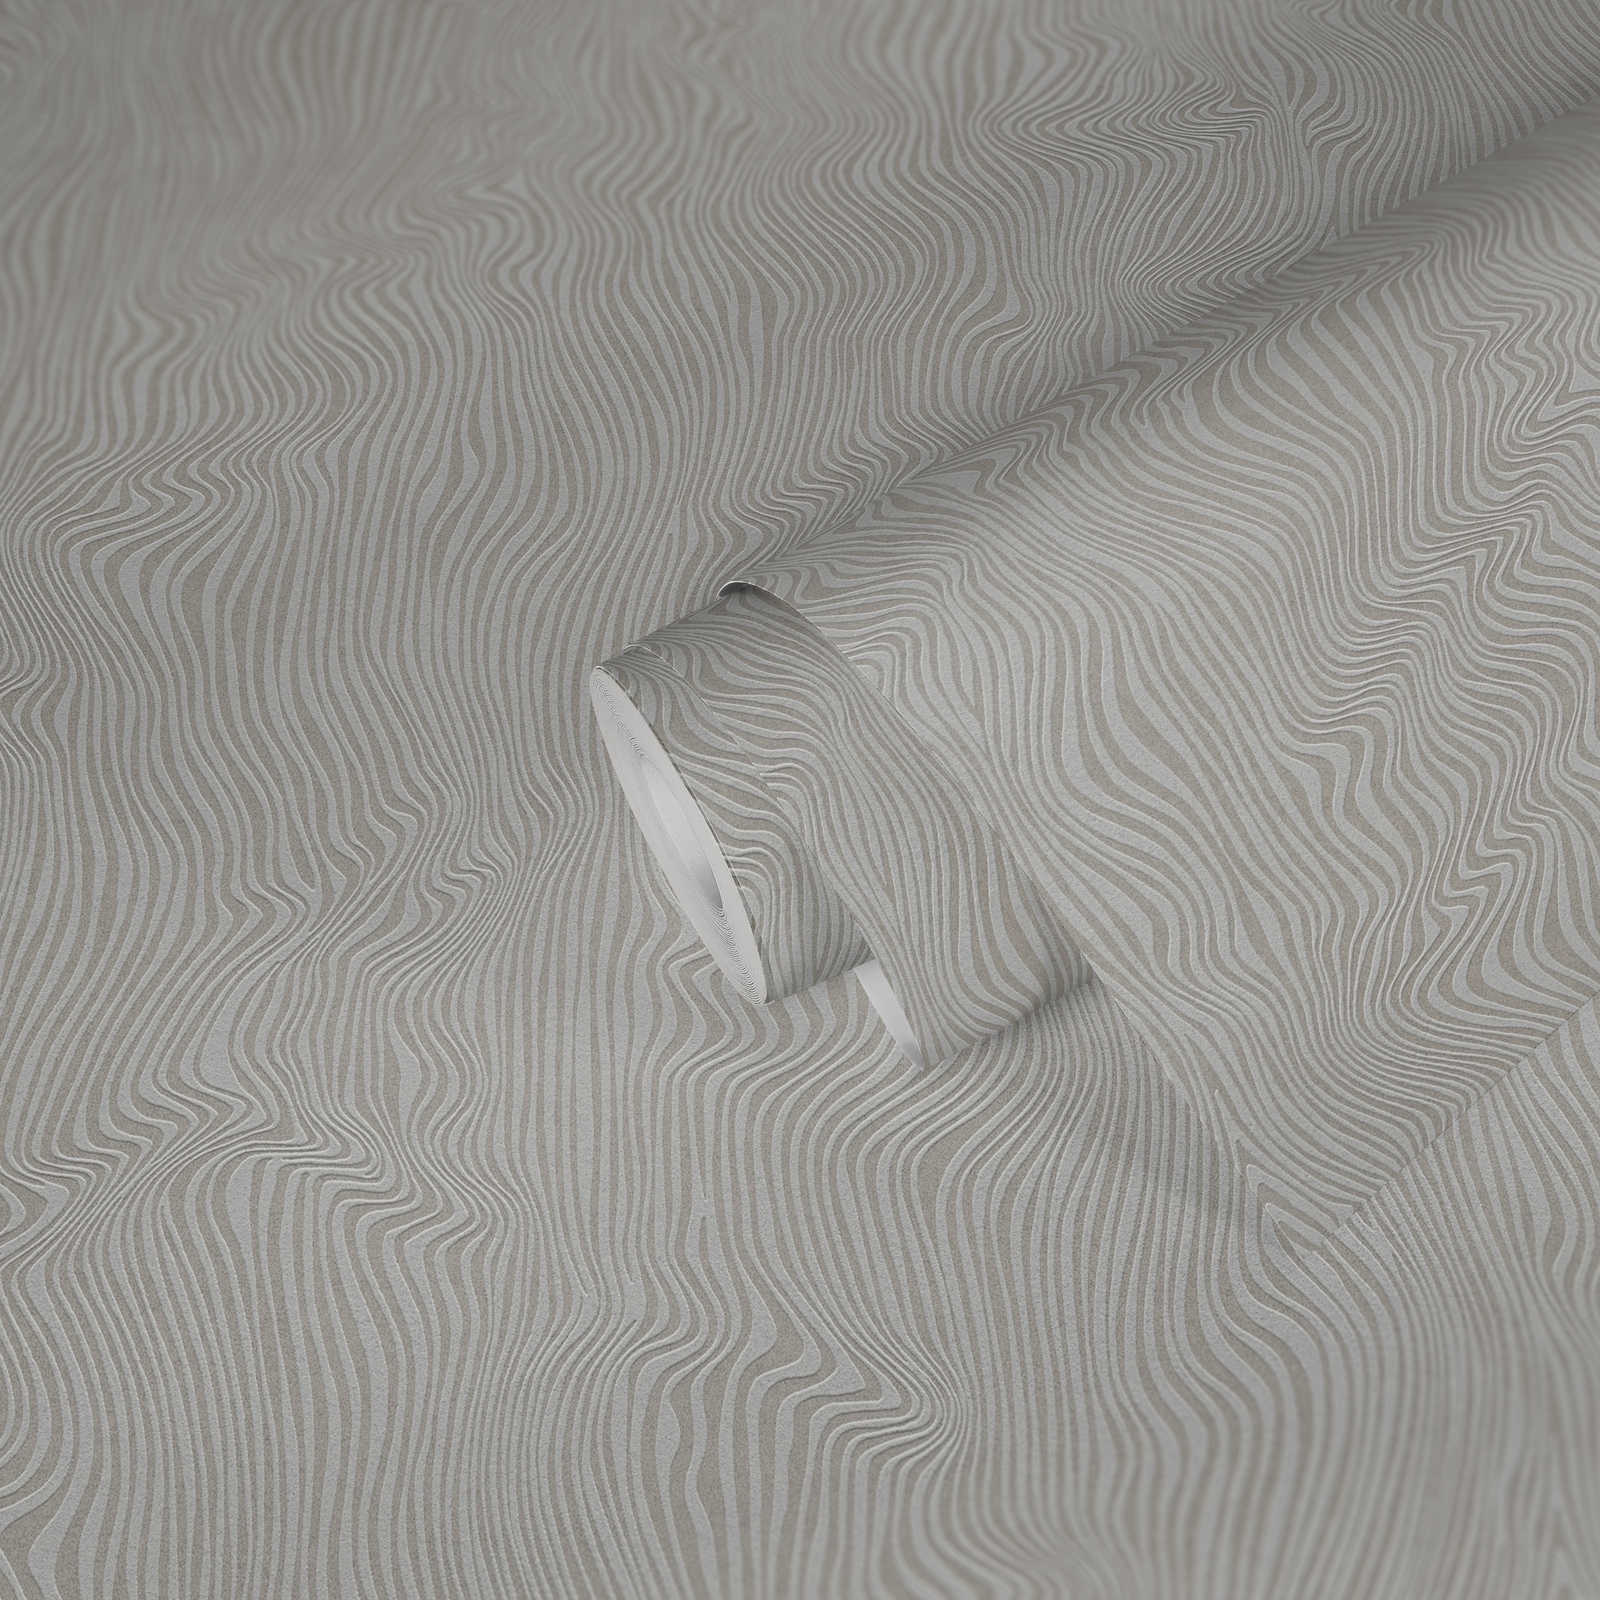             Papier peint structuré avec motif à lignes uni - Gris
        